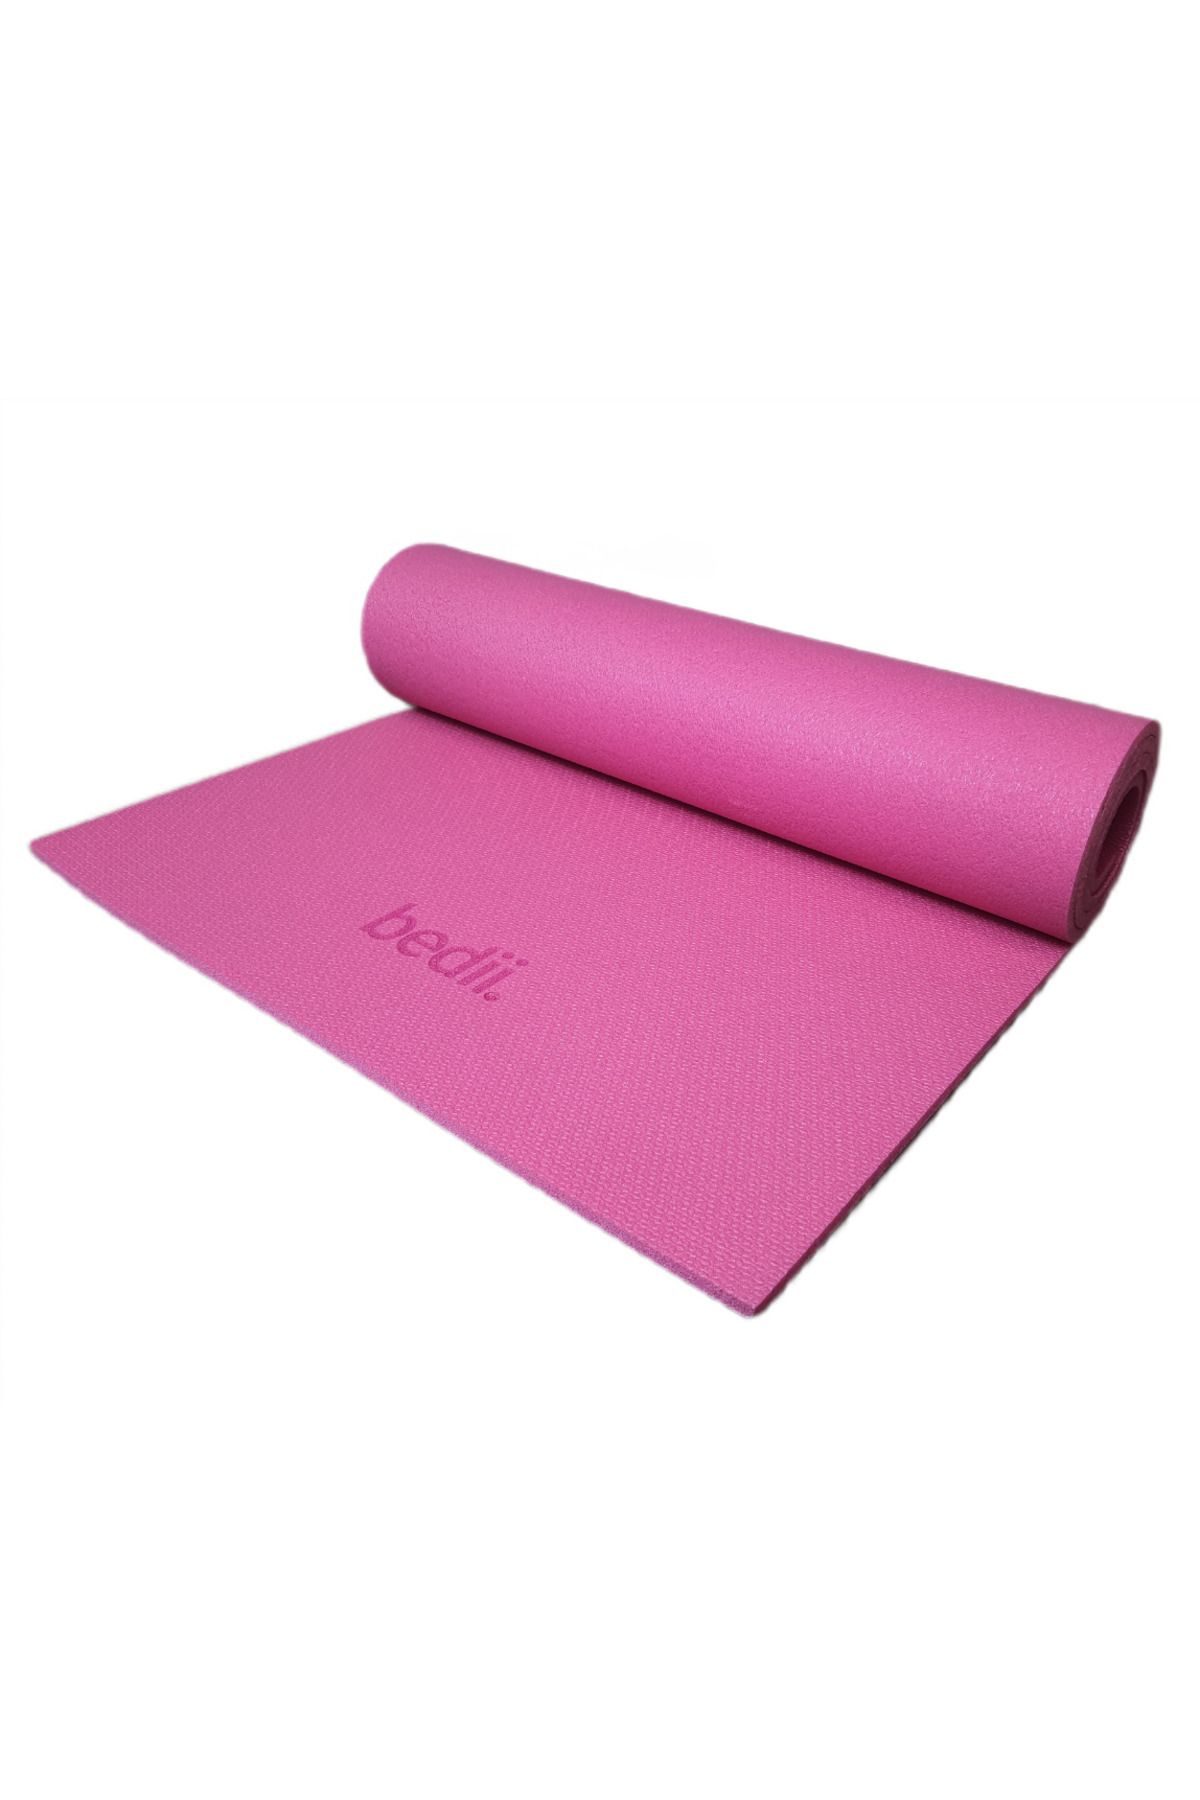 bedii Pilates Yoga Kamp Matı Egzersiz Minderi Kaymaz Taban 180x60 Cm 10mm